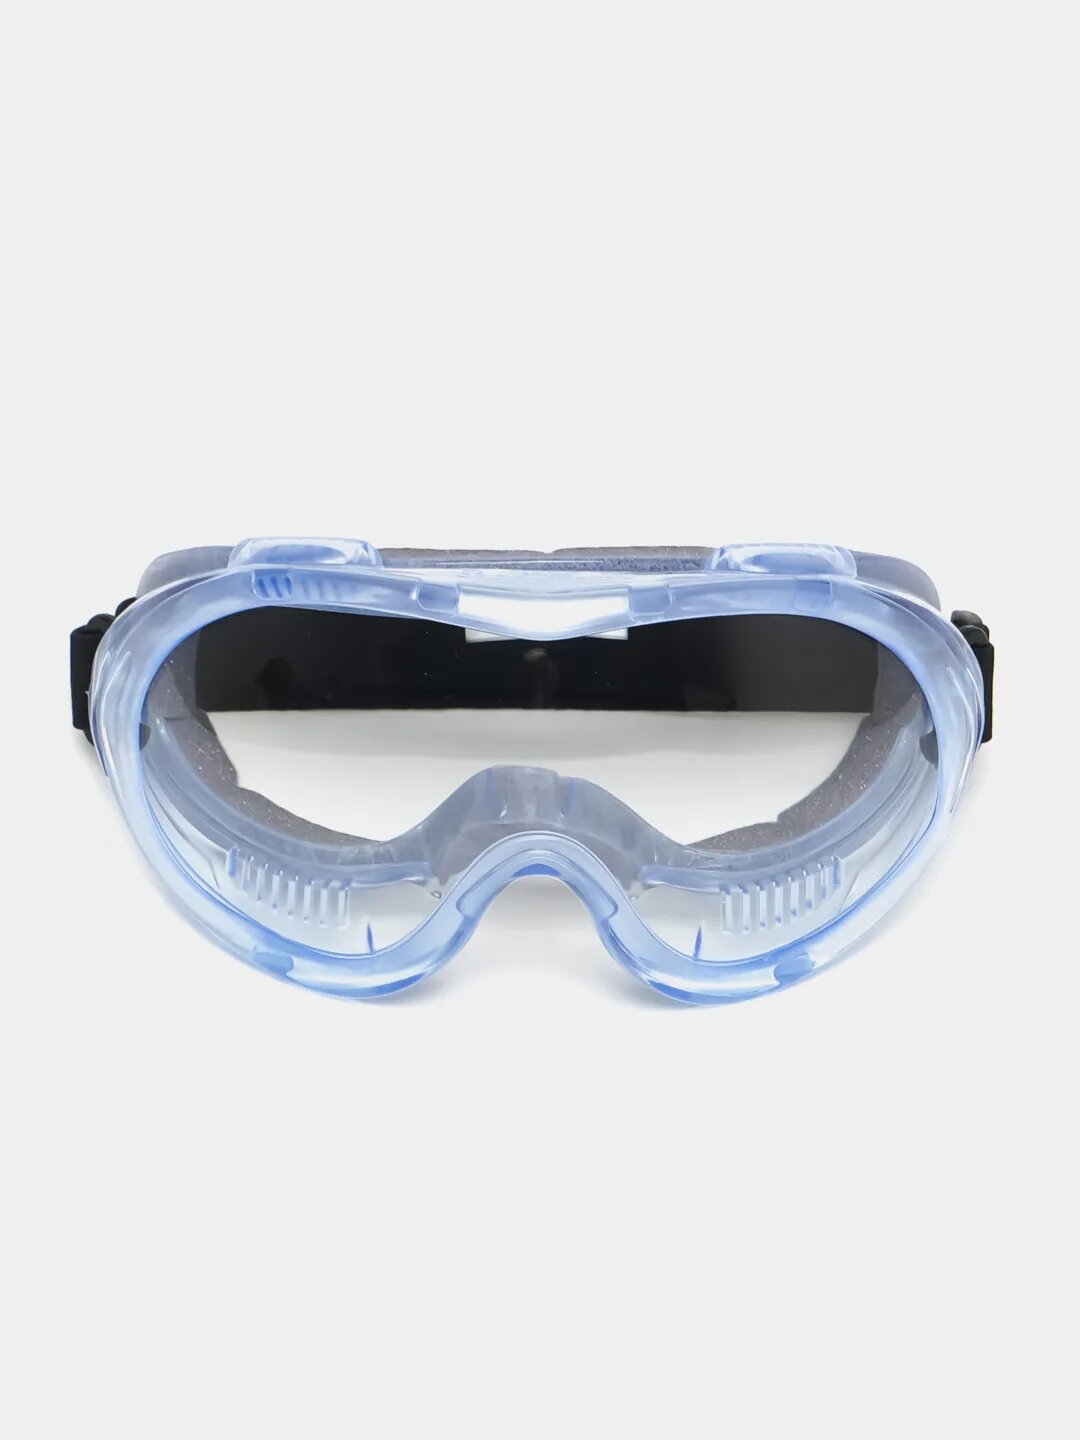 Очки защитные РОСОМЗ ЗН55 SPARK прозрачные, очки закрытые с мягким обтюратором